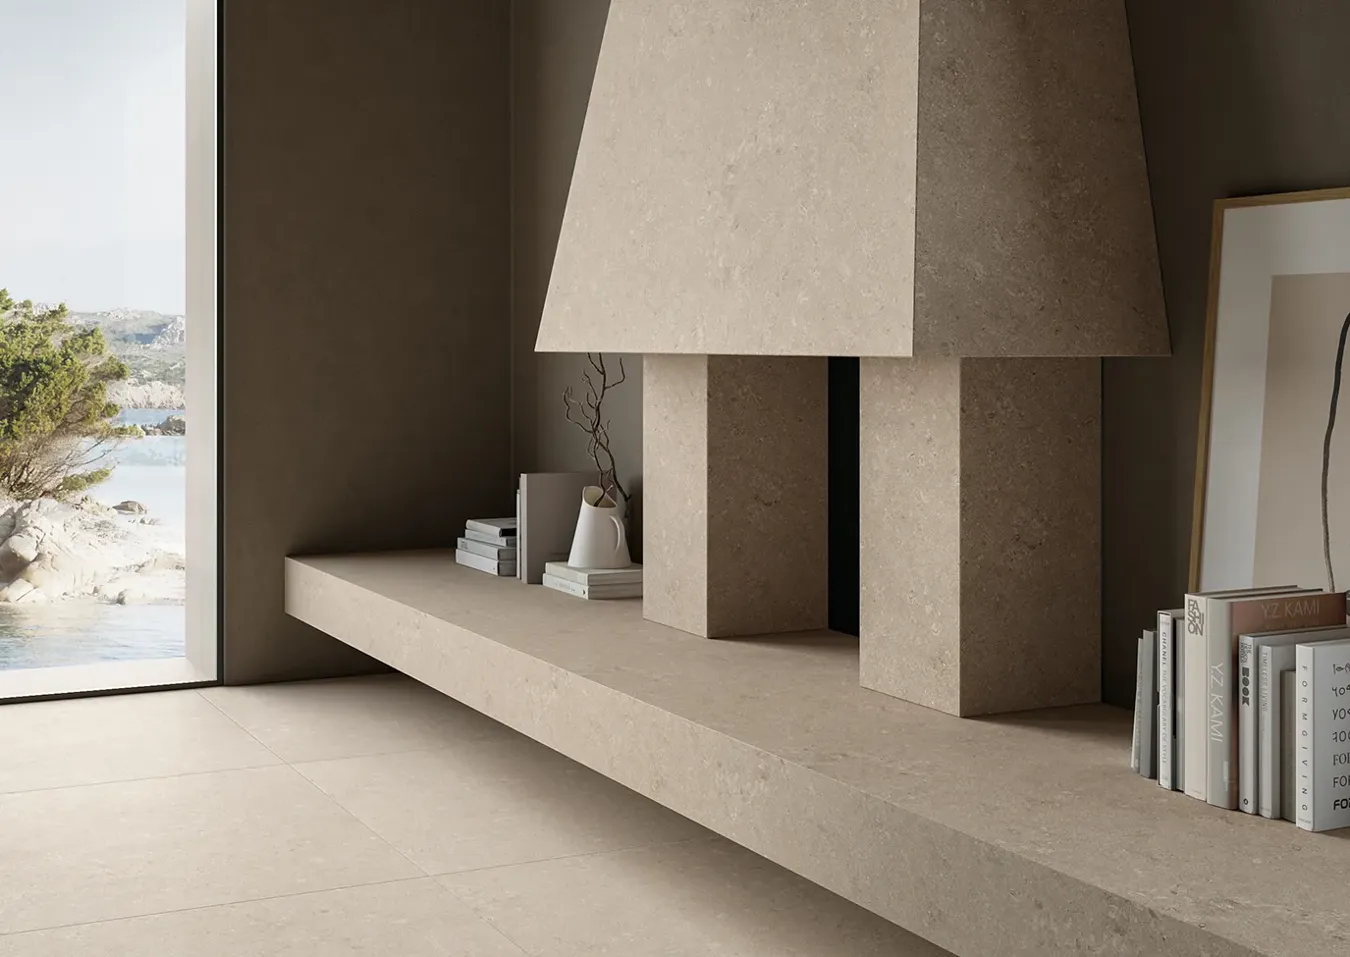 Modernes Interieur mit einem Kamin verkleidet in elfenbeinfarbenen Steineffekt-Fliesen, minimalistische Einrichtung und Panoramaaussicht